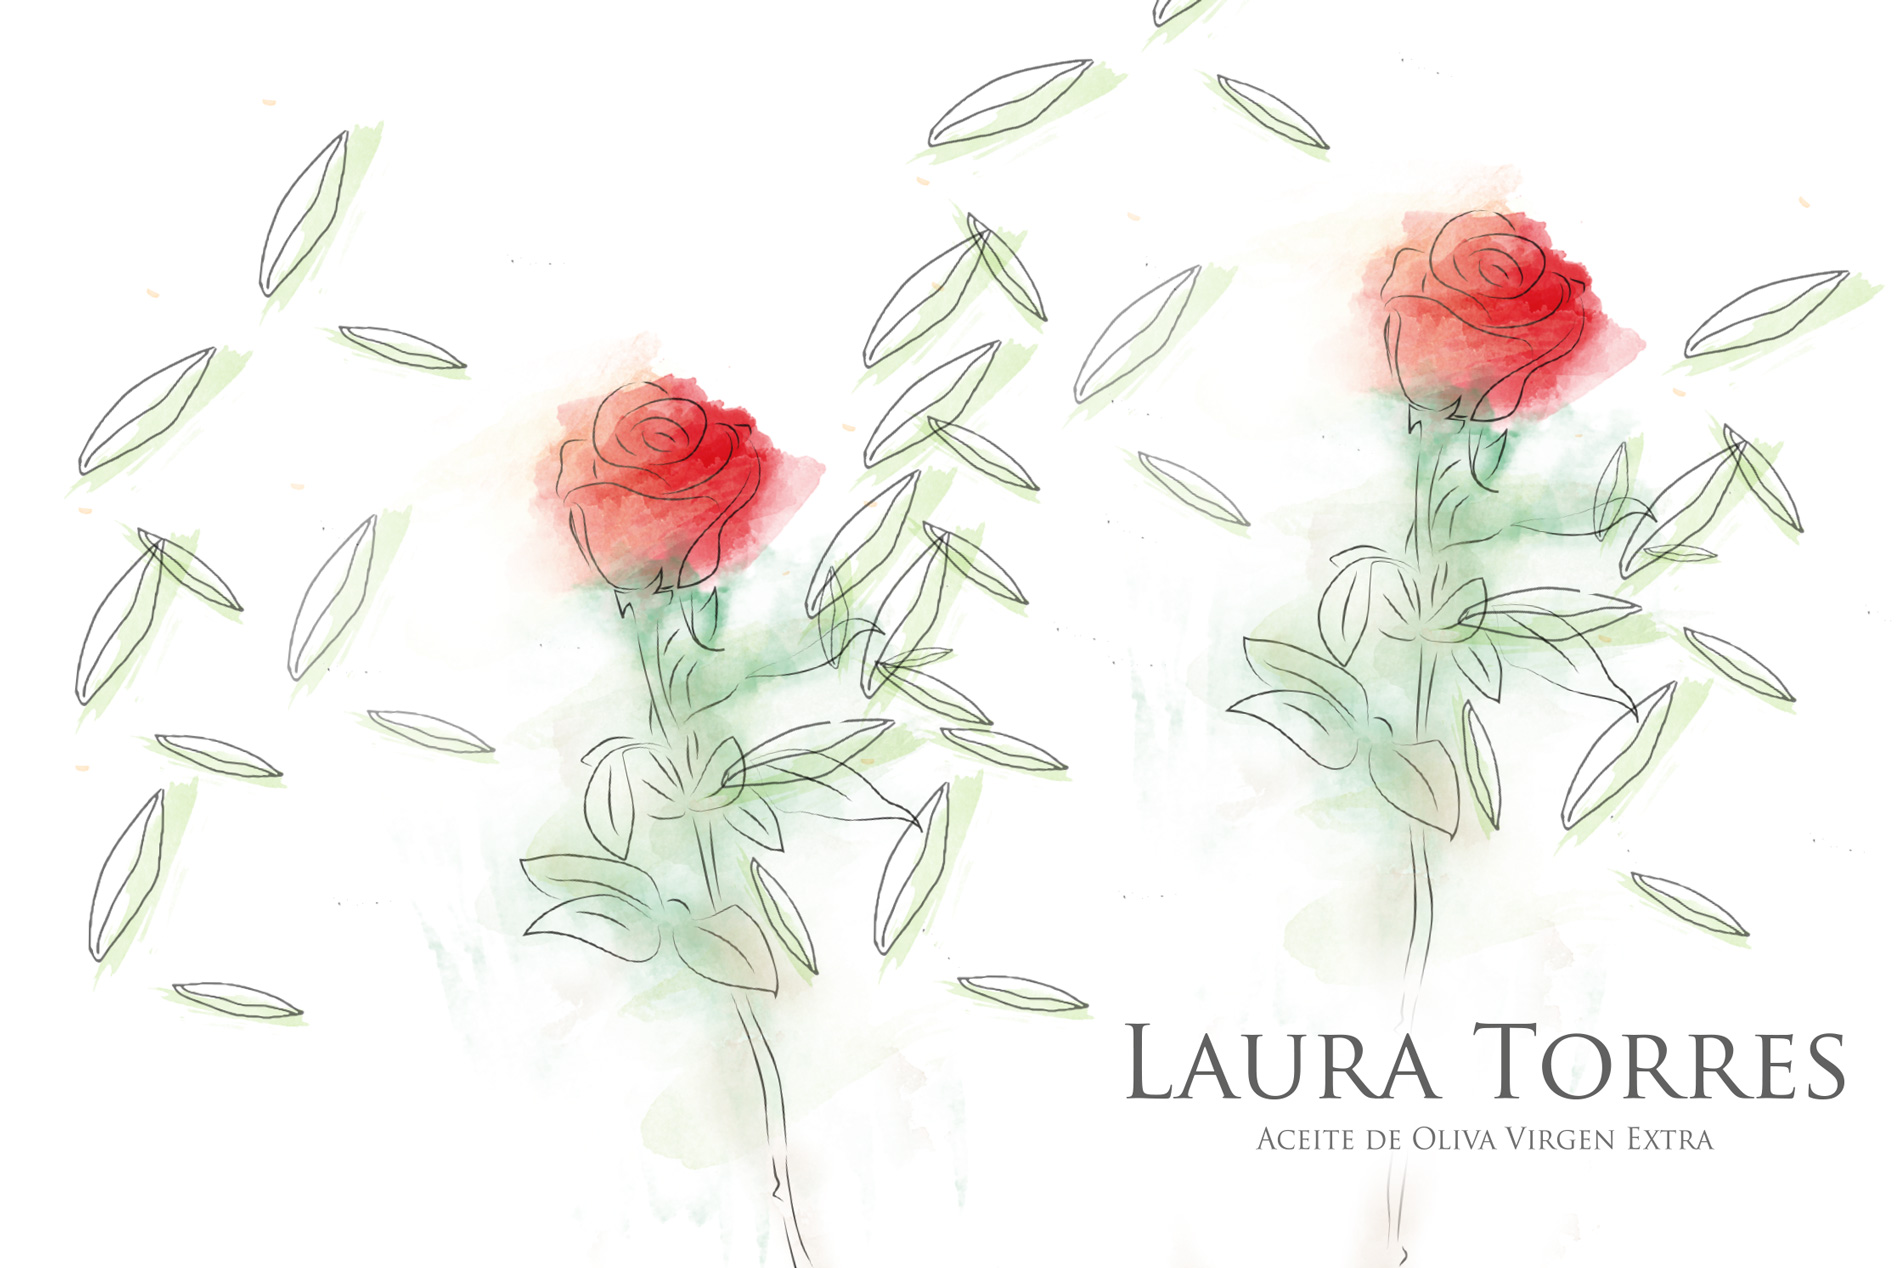 Diseño gráfico y creativo de etiquetas de aceite de oliva virgen extra para la marca LAURA TORRES